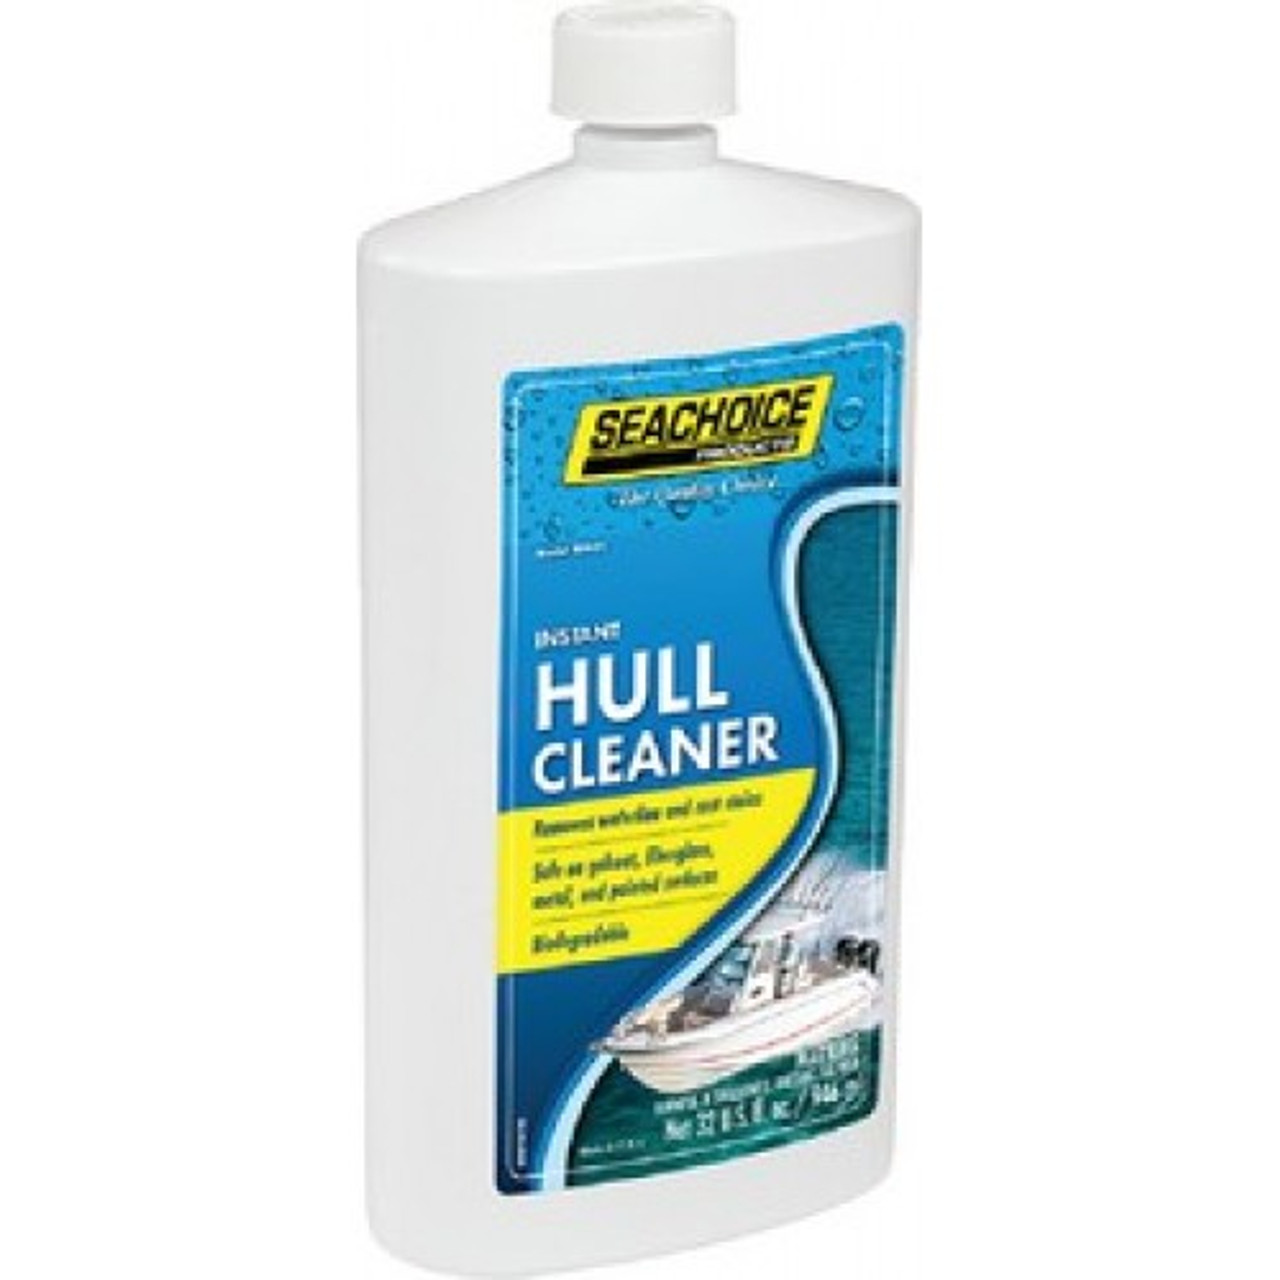 Seachoice Hull Cleaner - 1 Quart